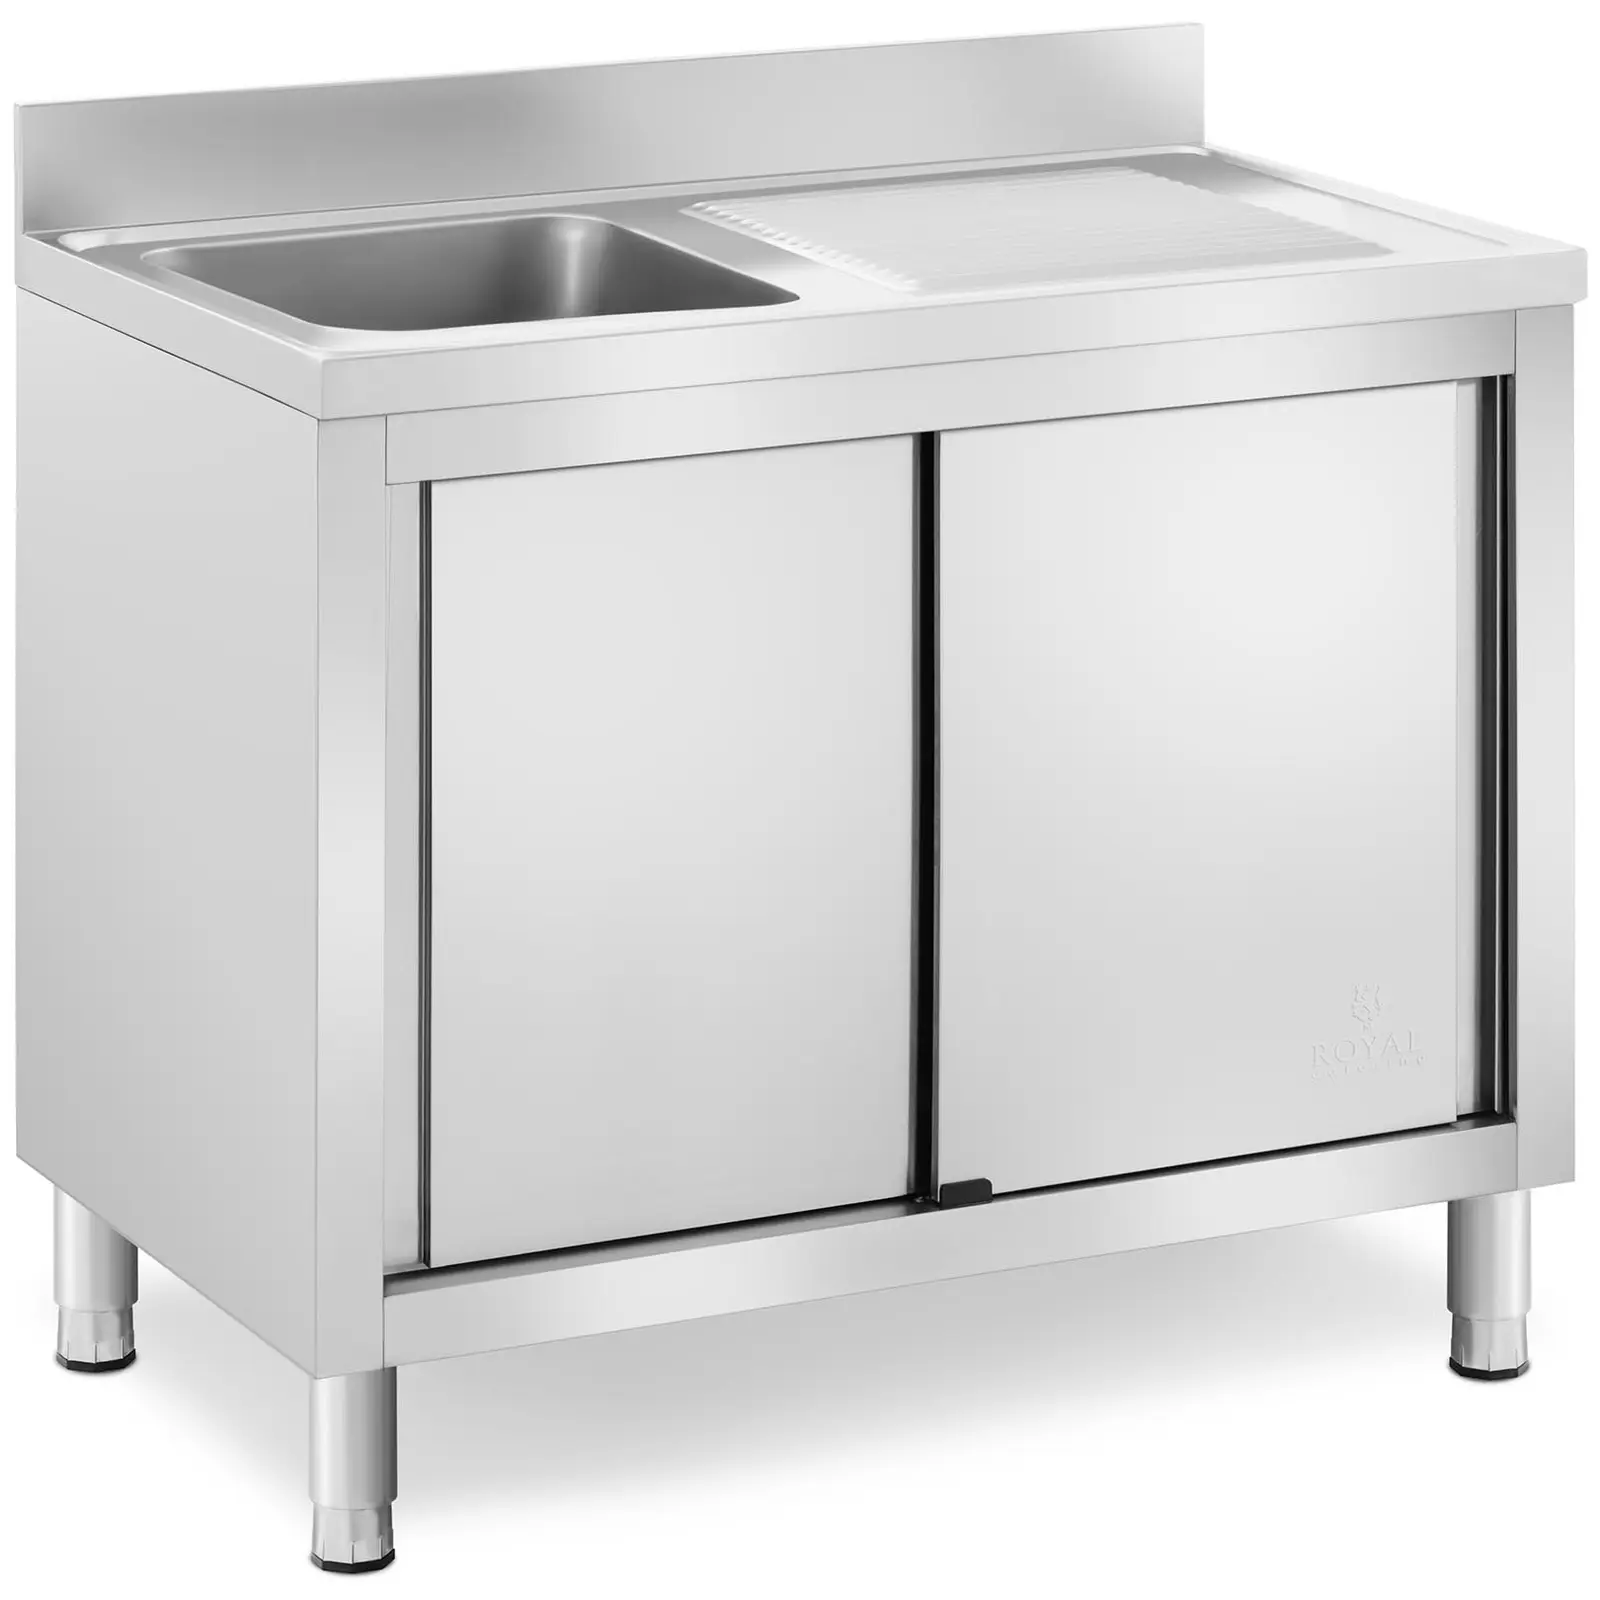 Кухненска мивка за търговски цели - 1 мивка - Royal Catering - неръждаема стомана - 400 x 400 x 240 мм